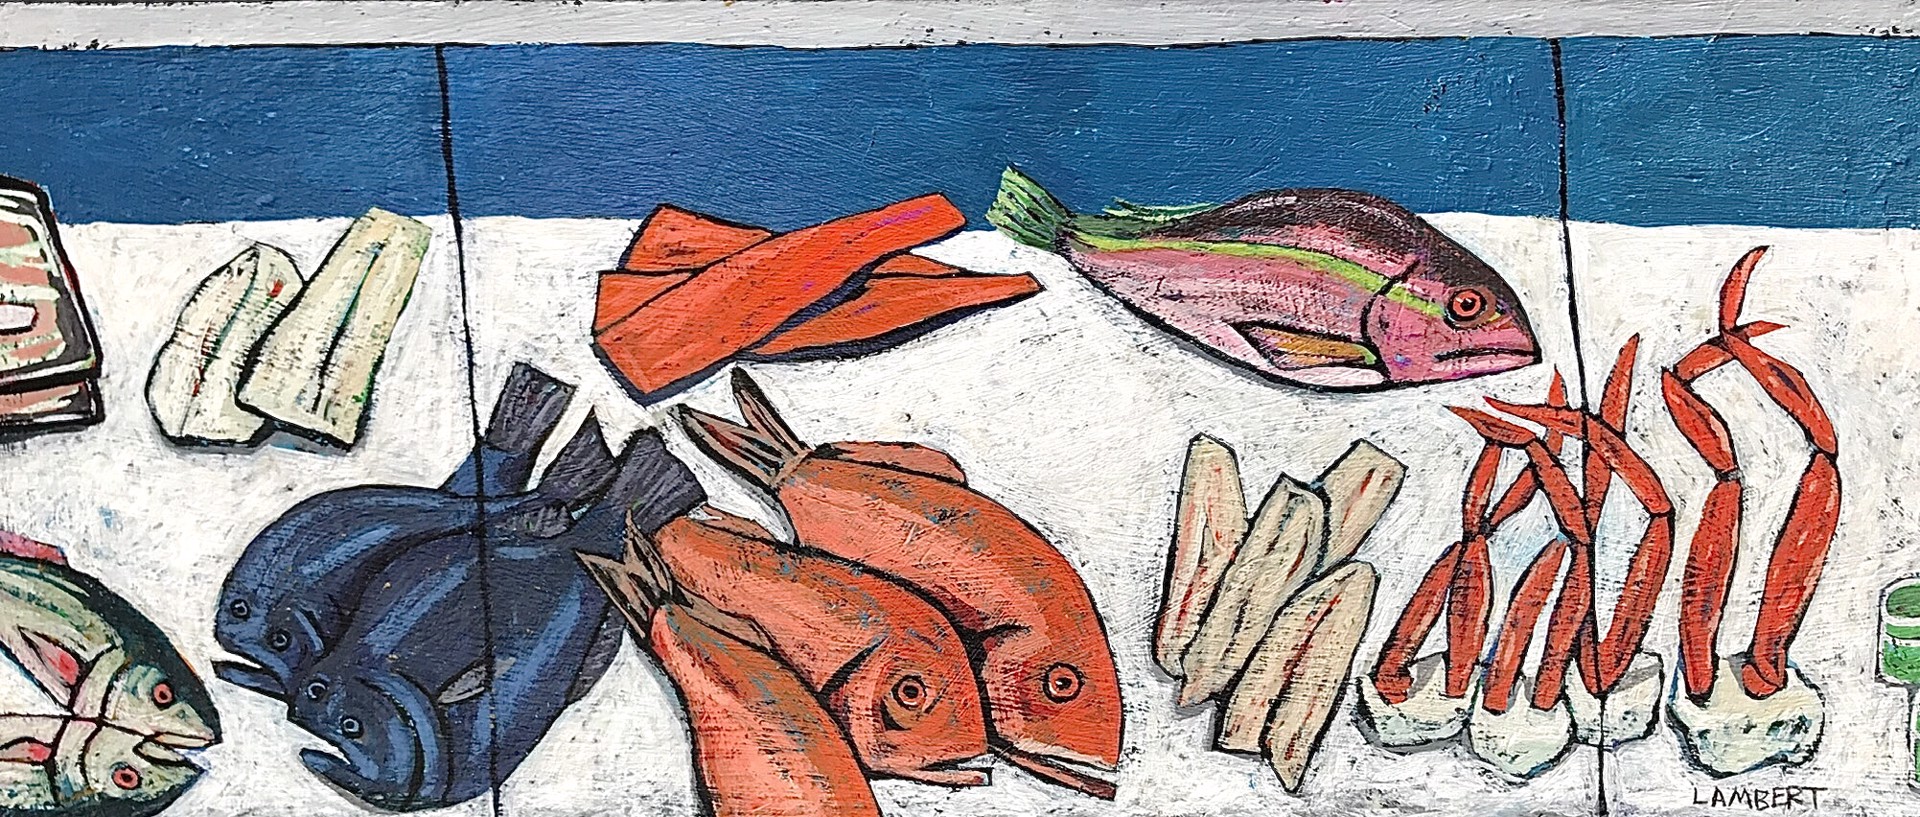 Fish Market by David Lambert